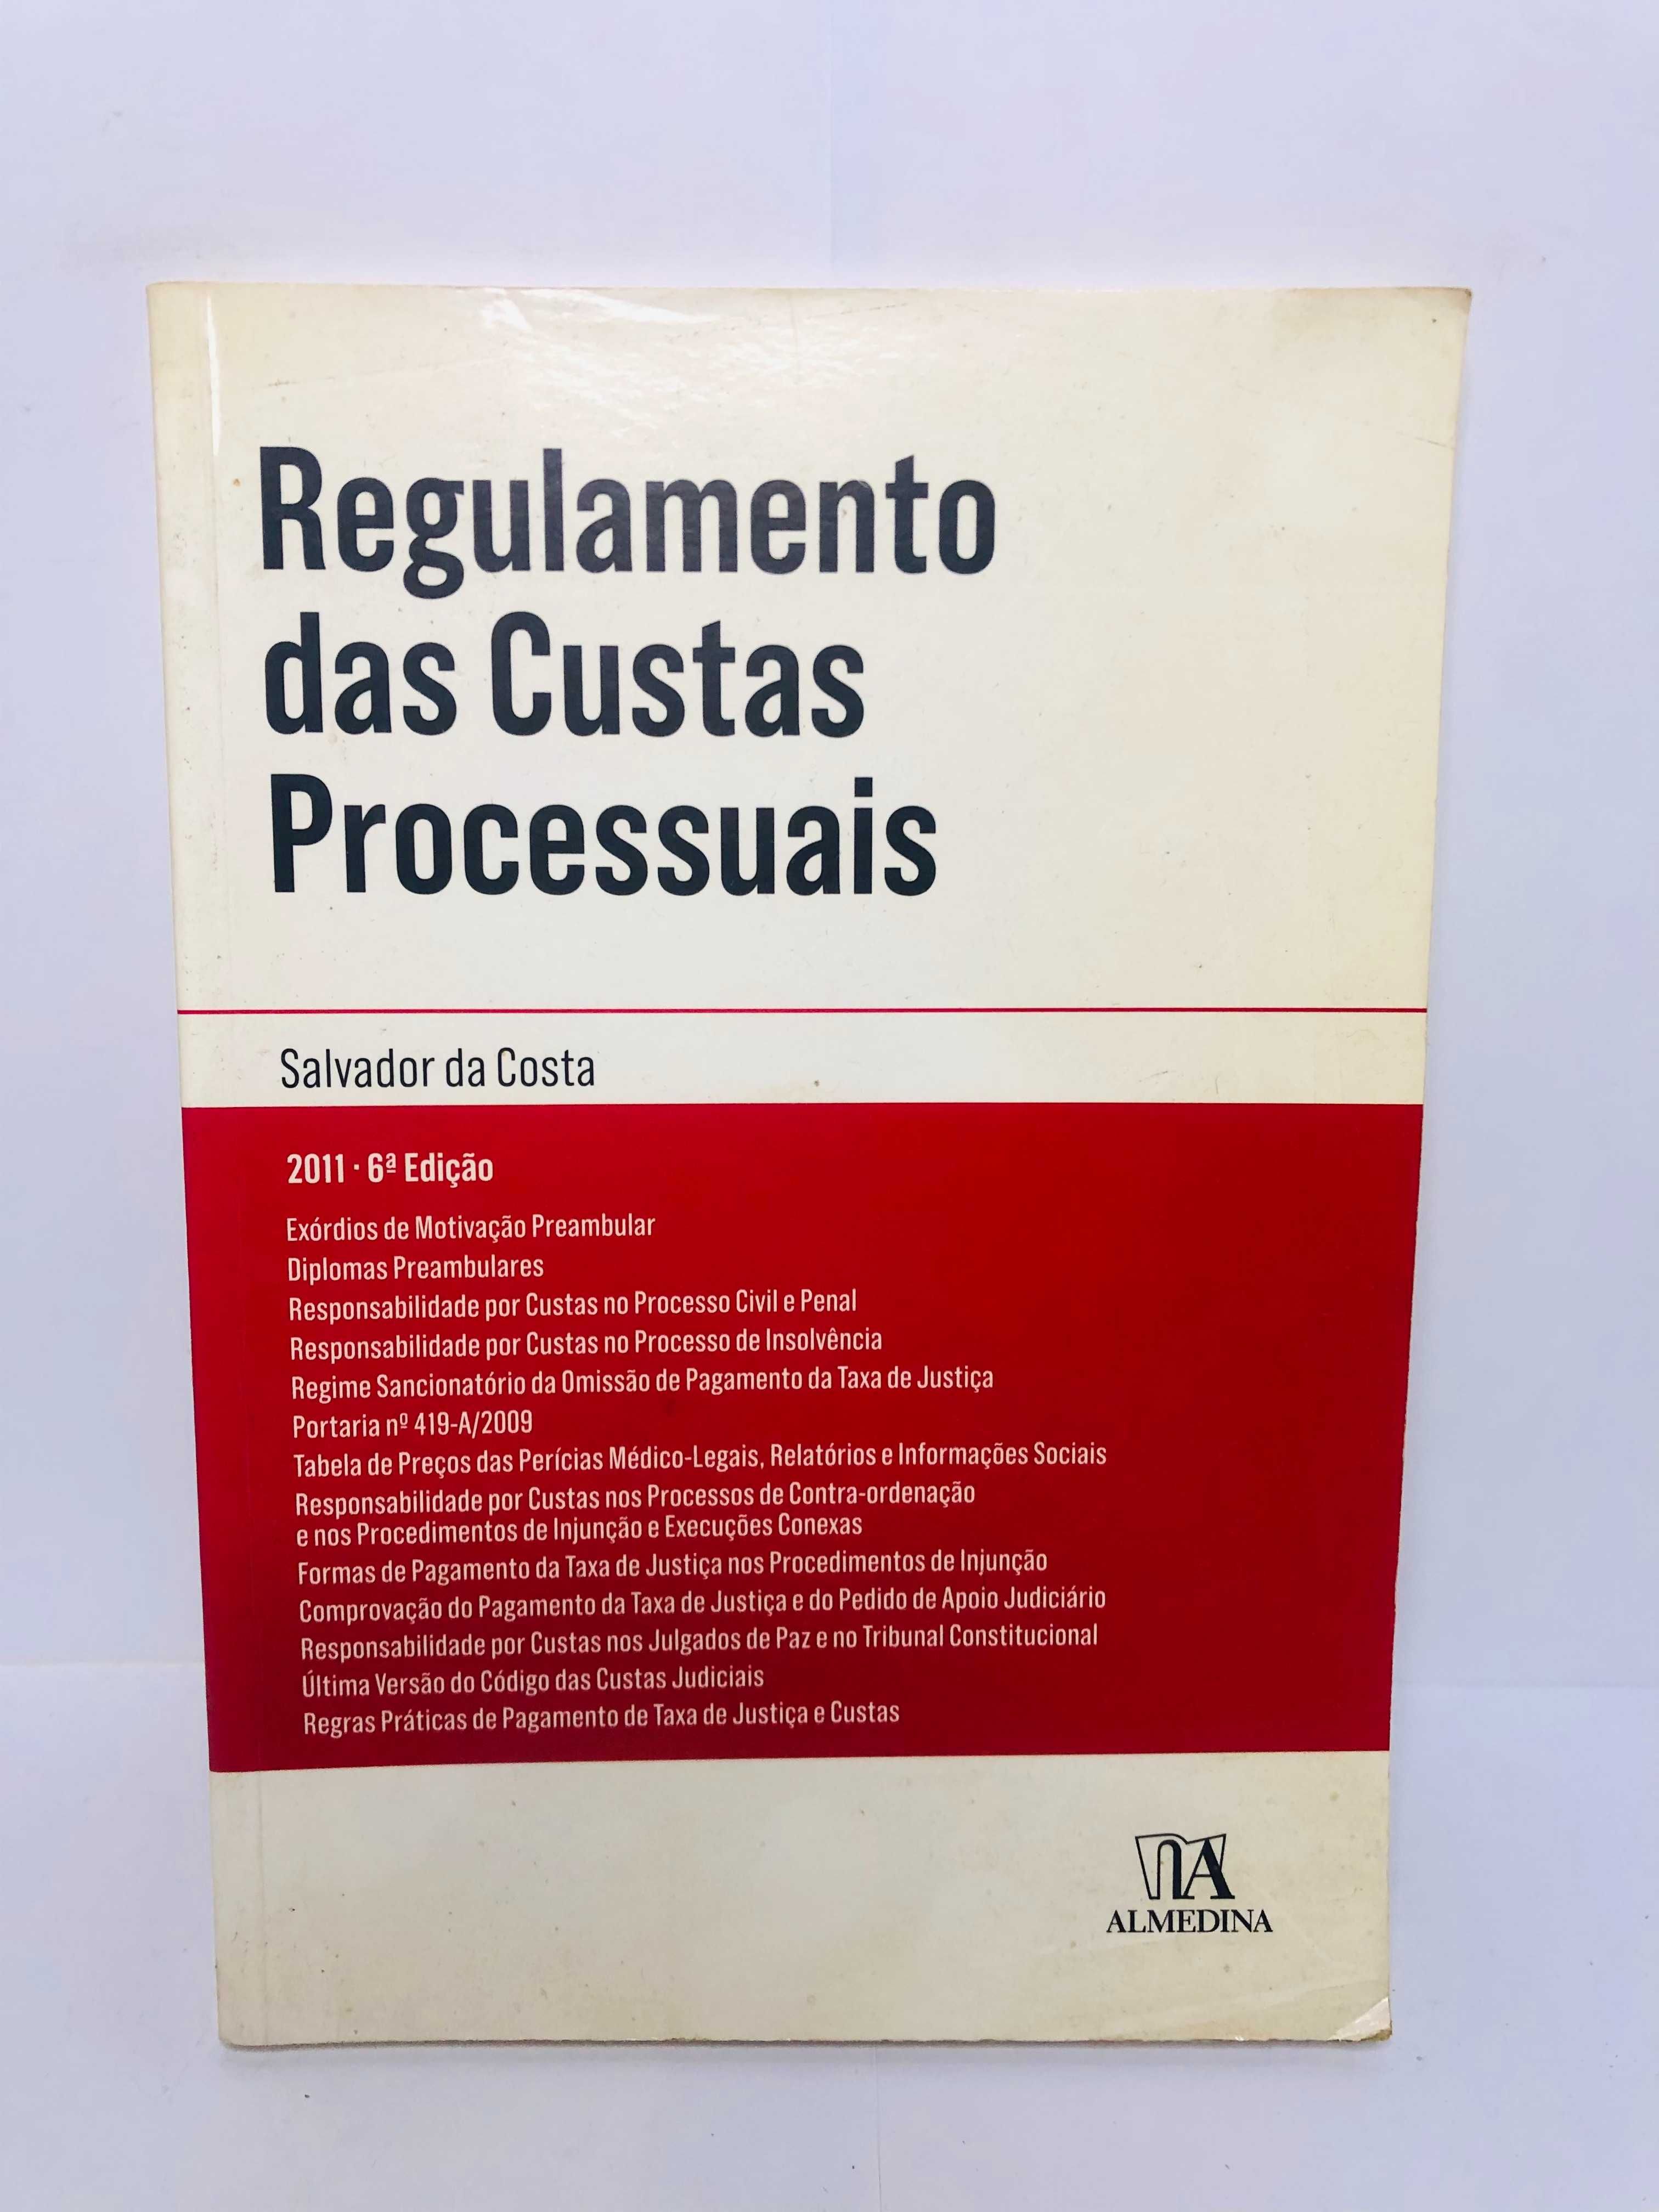 Regulamento das Custas Processuais 6ª Edição 2011 - Salvador da Costa